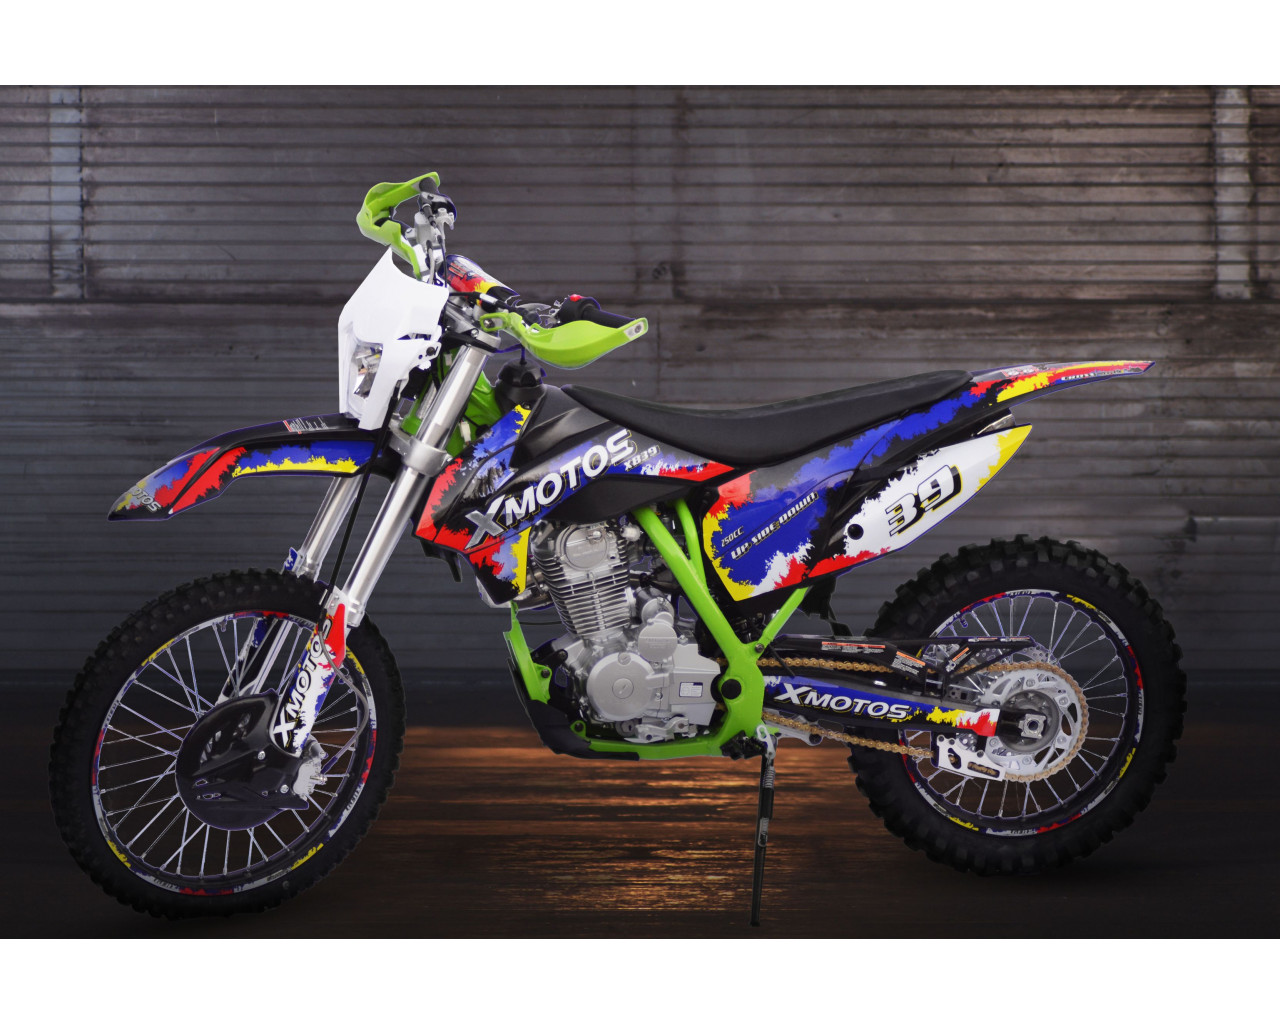 Motorcycle XMOTOS - XB88 250cc 4t 21/18 Color Green